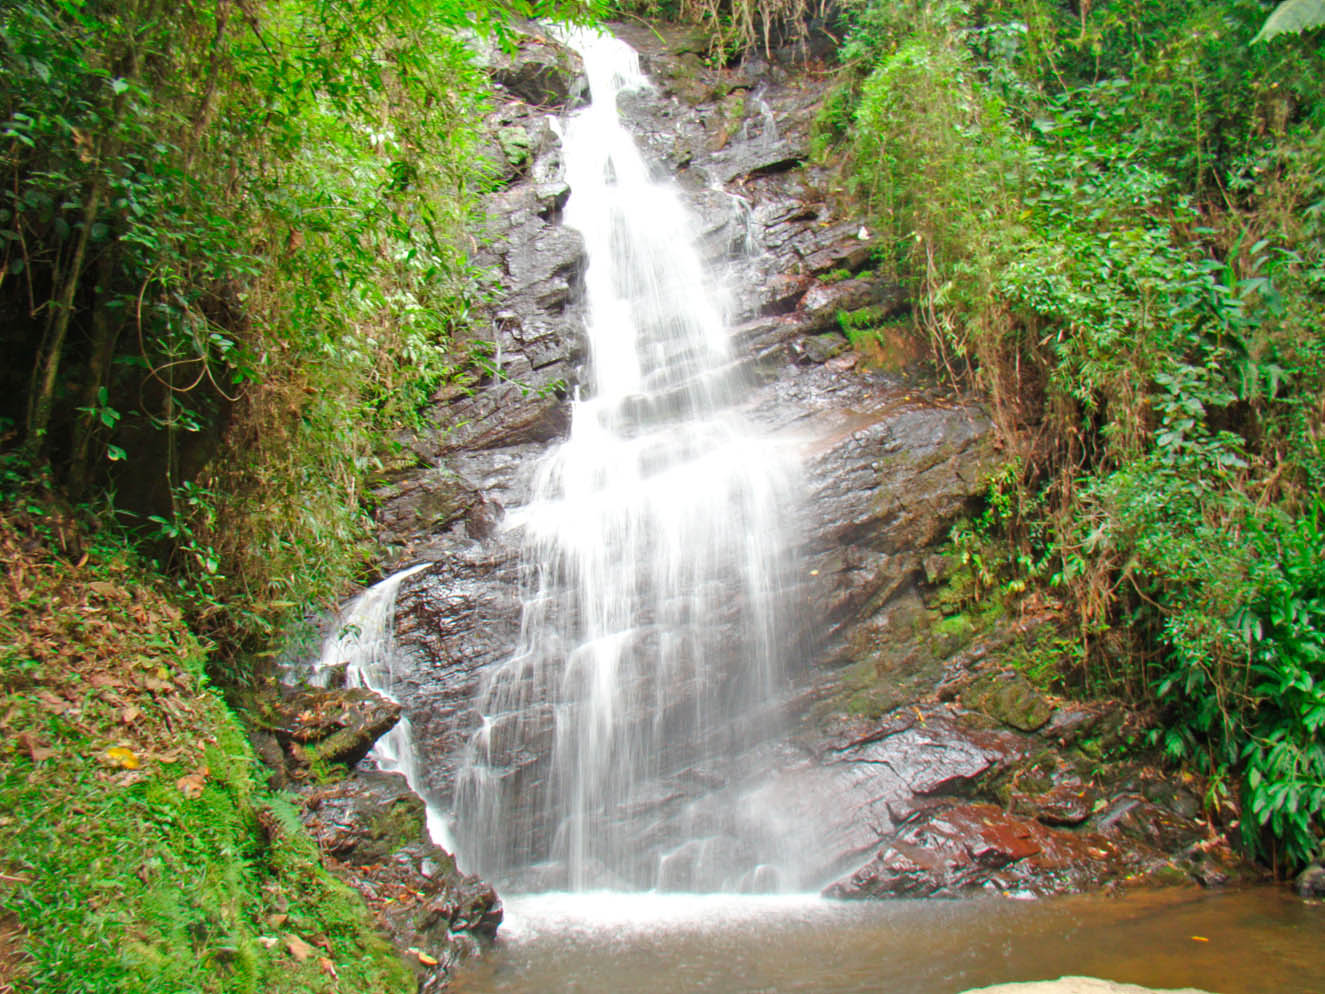 Turismo - Cachoeira Véu da Noiva - Pousada Visconde de Mauá - Visconde de Mauá - RJ